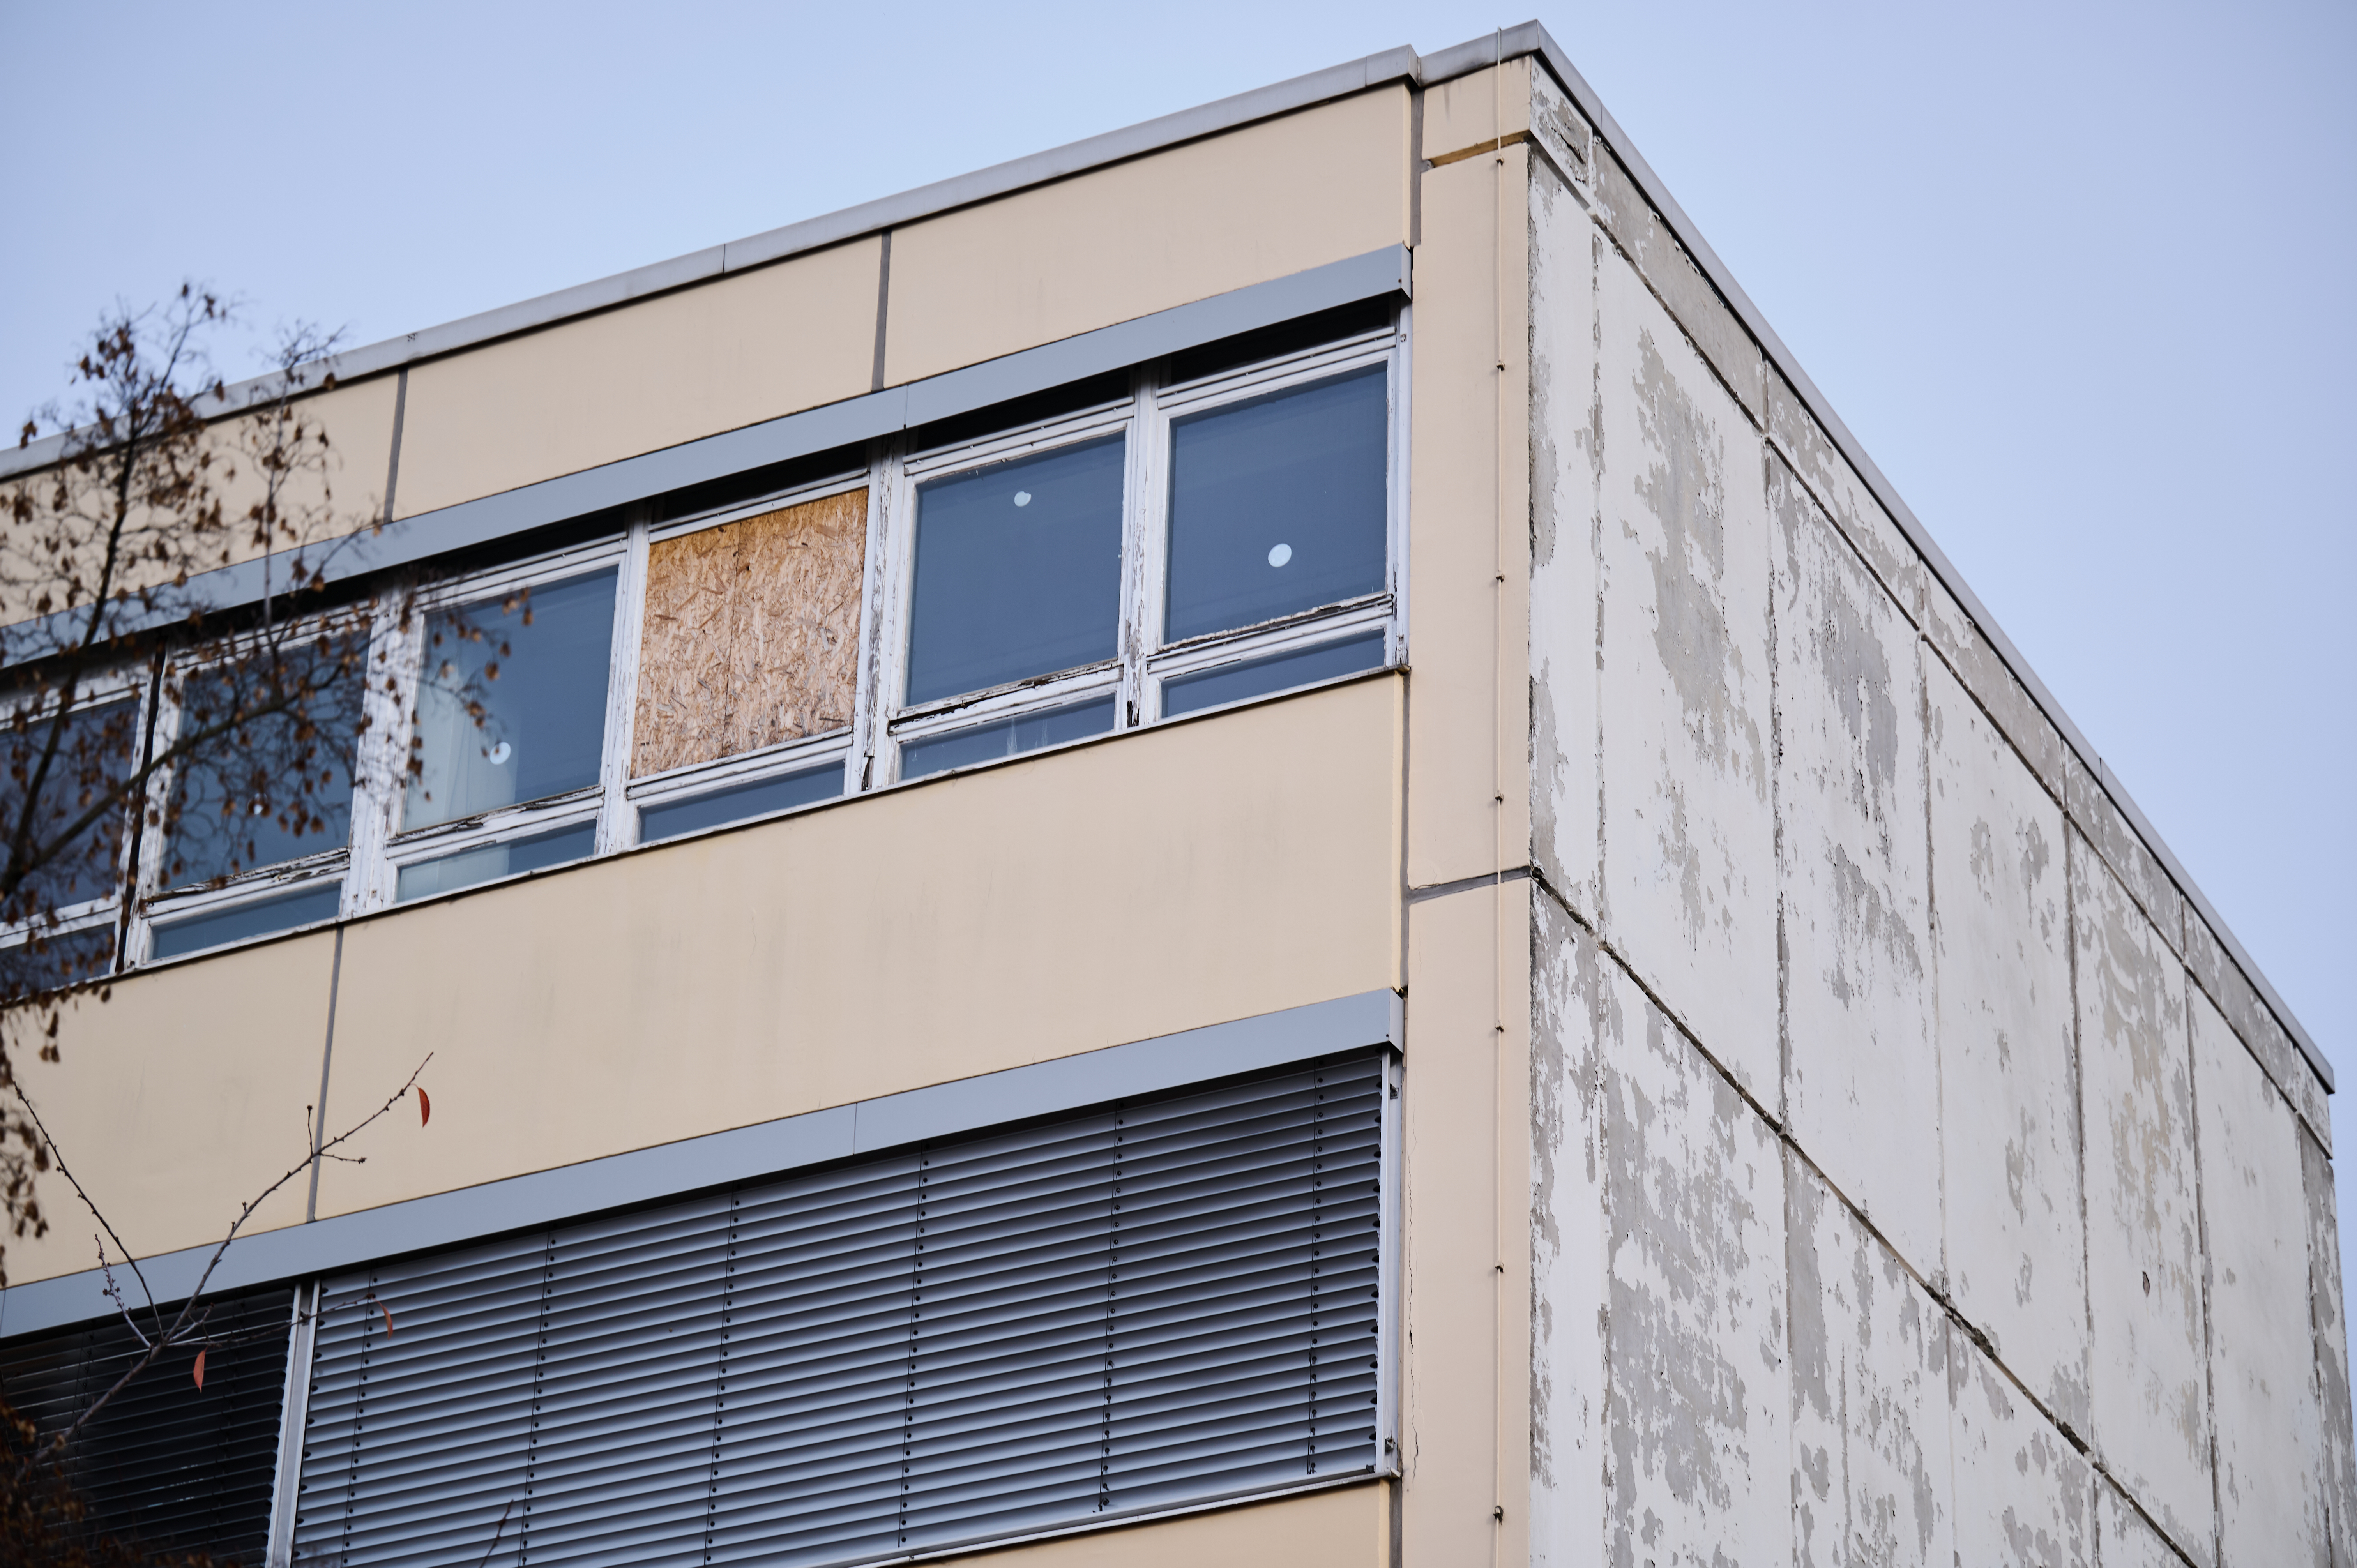 Ein Fenster des Gymnasiums am Europasportpark (GESP) ist provisorisch mit Holz verschlossen, während an den anderen Fenstern Aufkleber kleben, die anzeigen, dass diese Fenster nicht geöffnet werden dürfen. Dem Gymnasium droht wegen ausbleibender Sanierung die Schließung. 